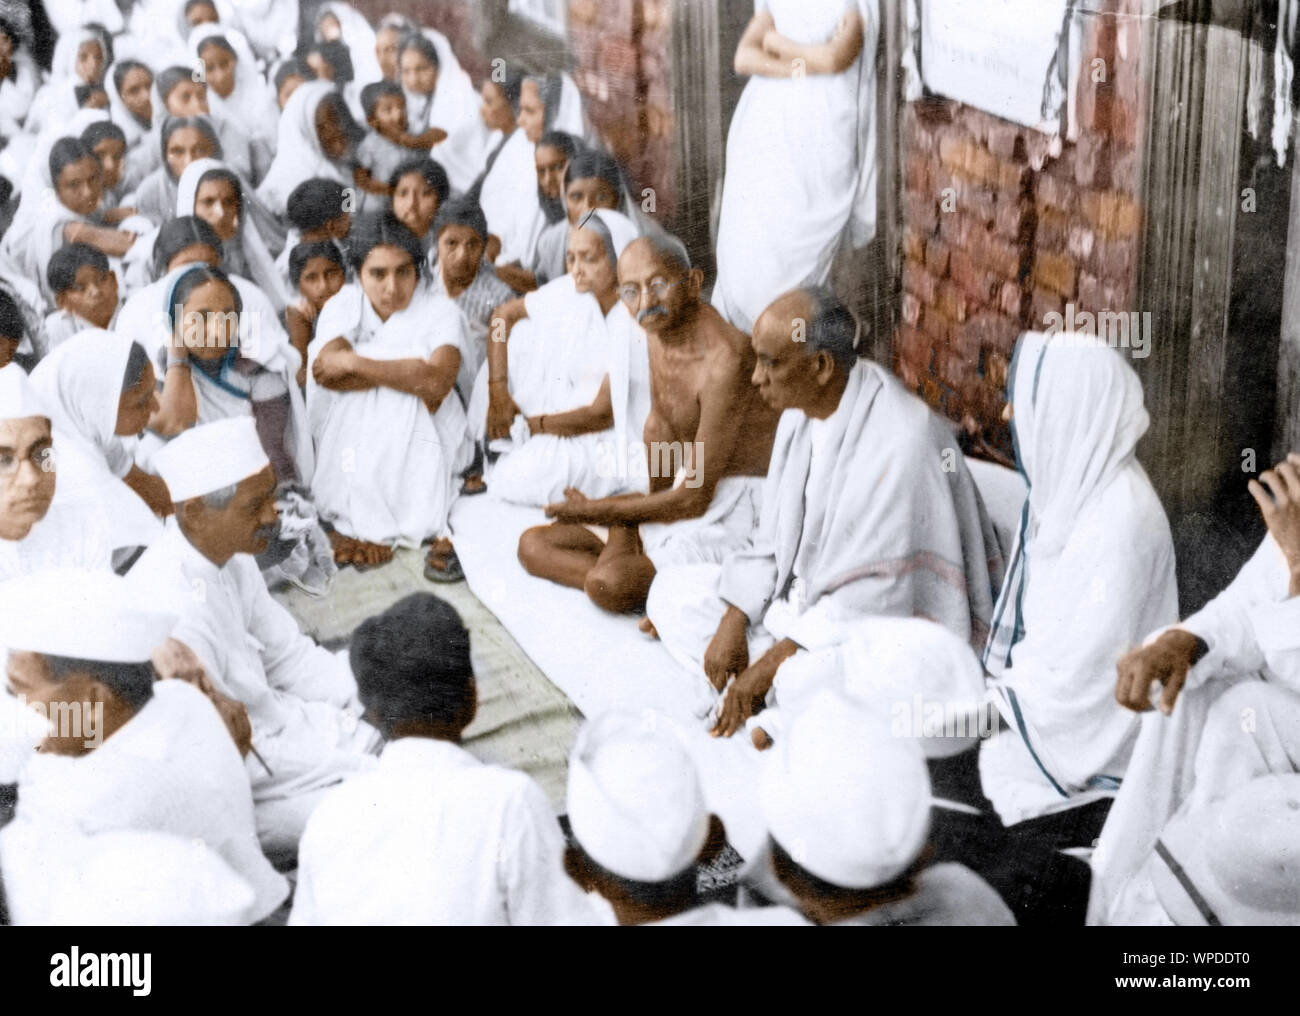 Mahatma Gandhi rencontre de prière, après avoir visité des villages frappés par l'épidémie, Gujarat, Inde, Asie, 1940 Banque D'Images